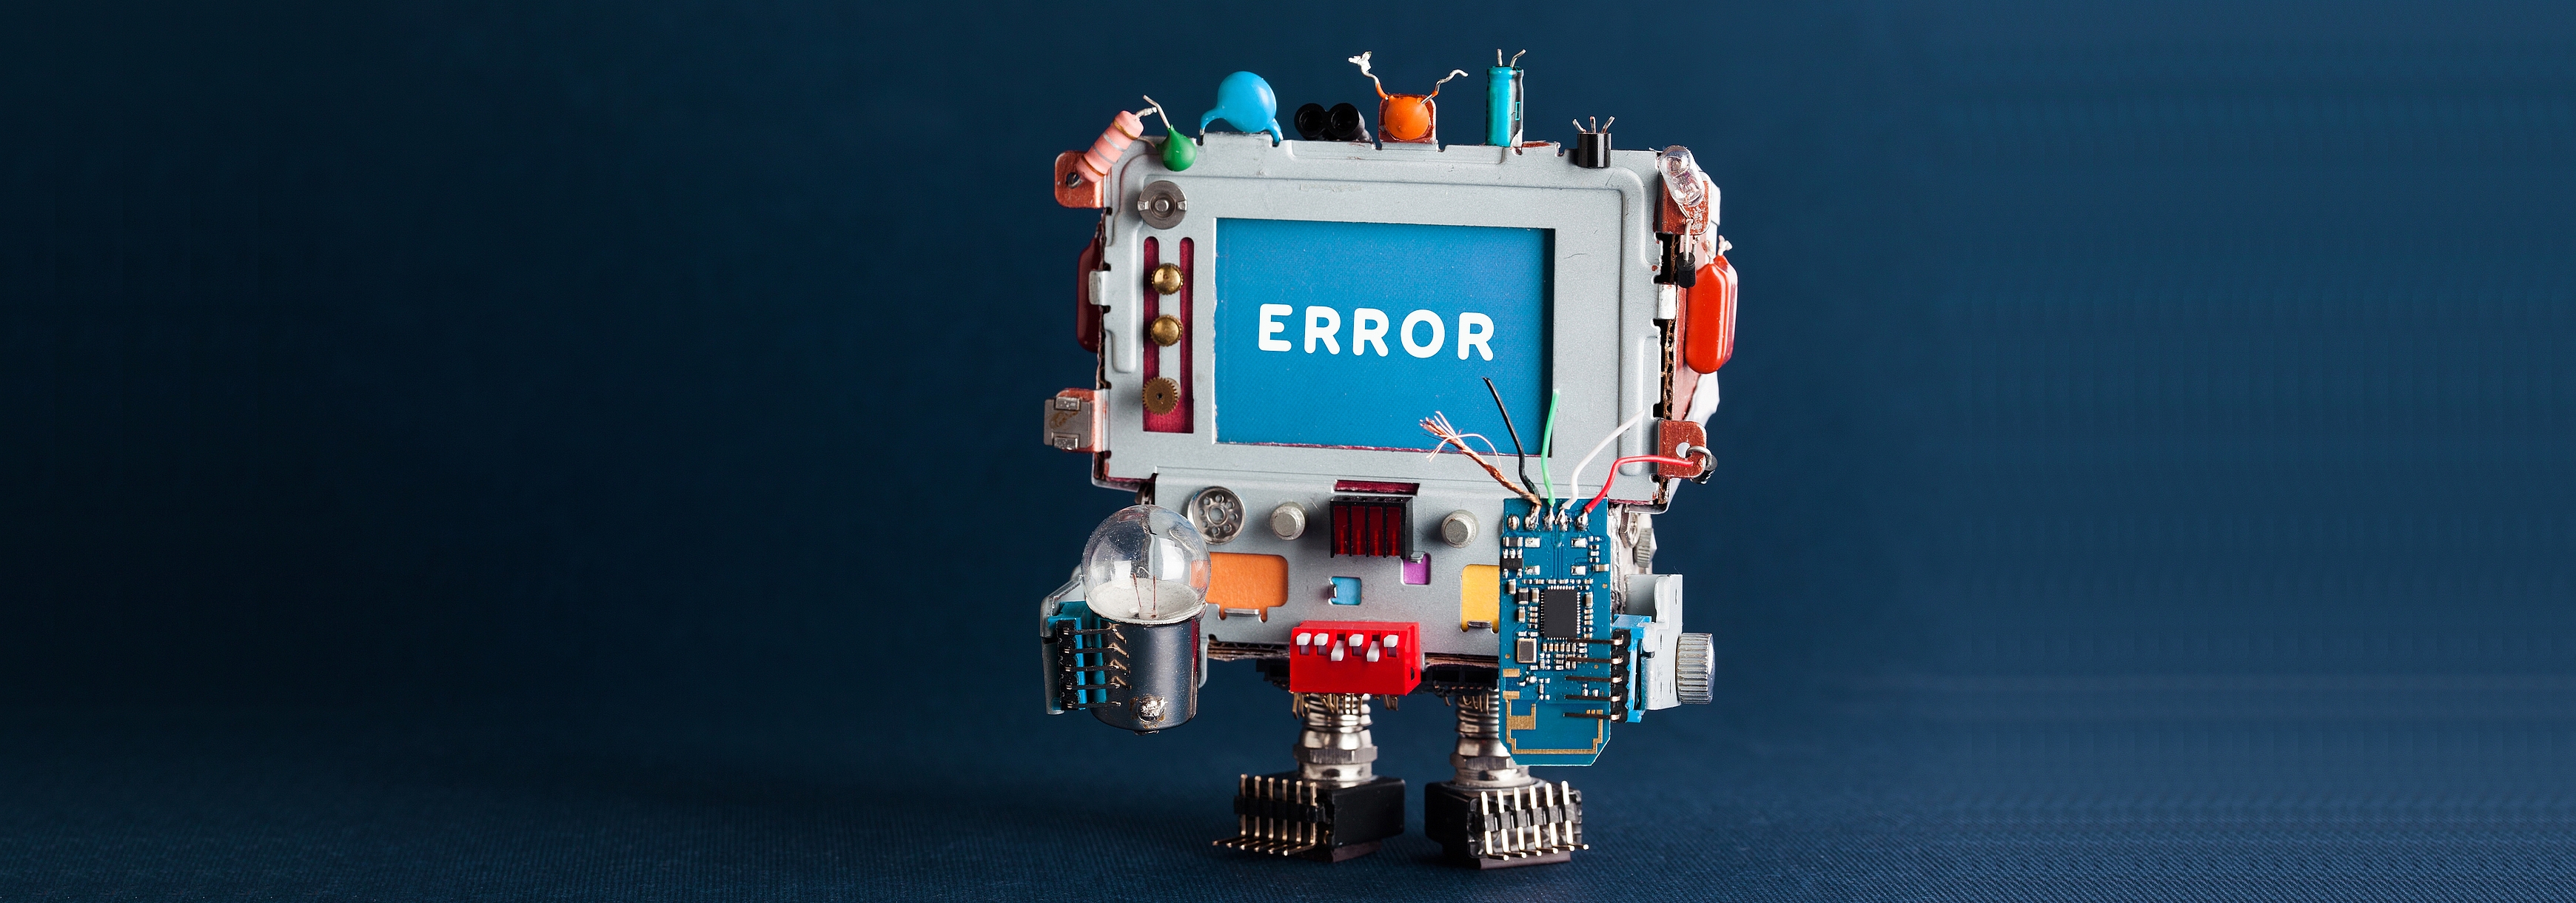 Spielzeug-Roboter-Computer mit Glühbirne und defektem Schaltkreis auf dunkelblauem Hintergrund, mit einem Kopf, der die Textmeldung Error auf blauem Bildschirm zeigt.